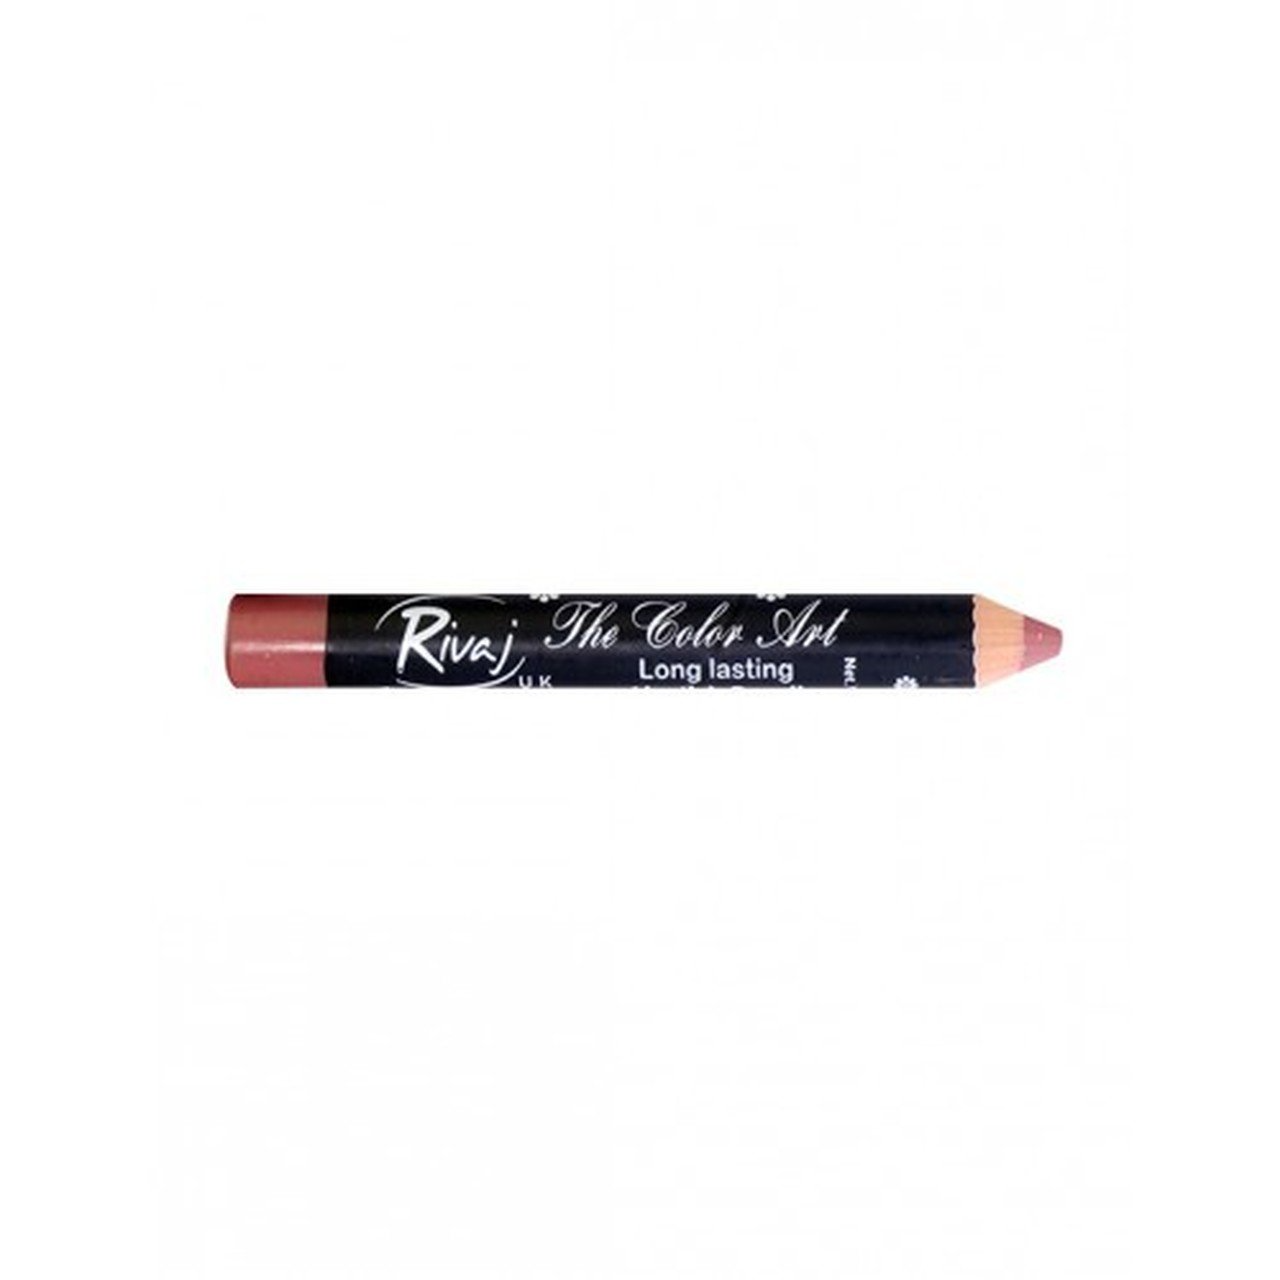 Rivaj Uk The Color Art Lipstick Pencil 036 Magenta - Highfy.pk